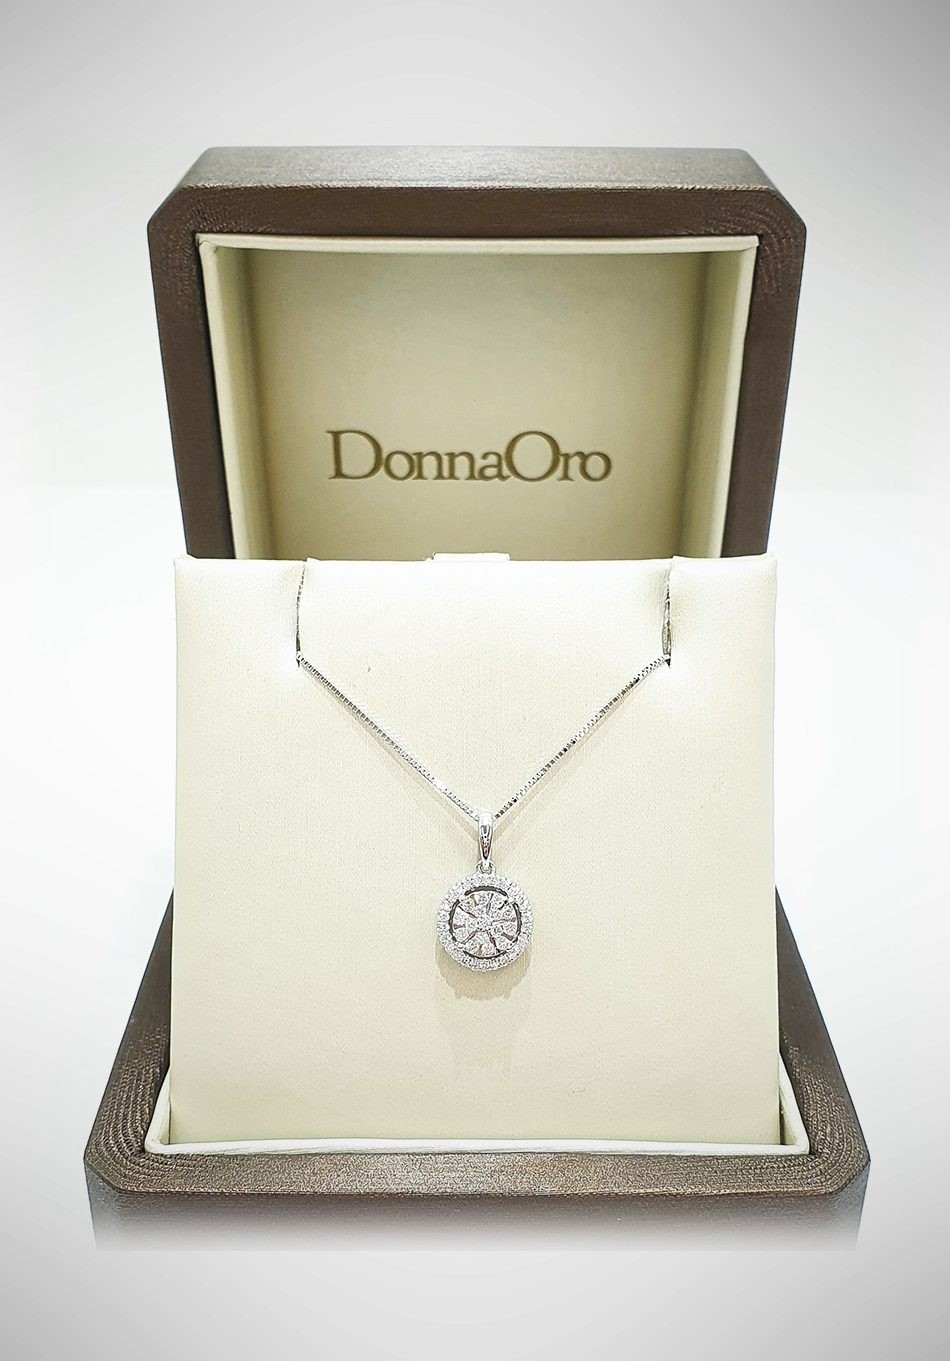 Collana Donnaoro in oro bianco e diamanti DNO14 - Gioielleria Loffredo